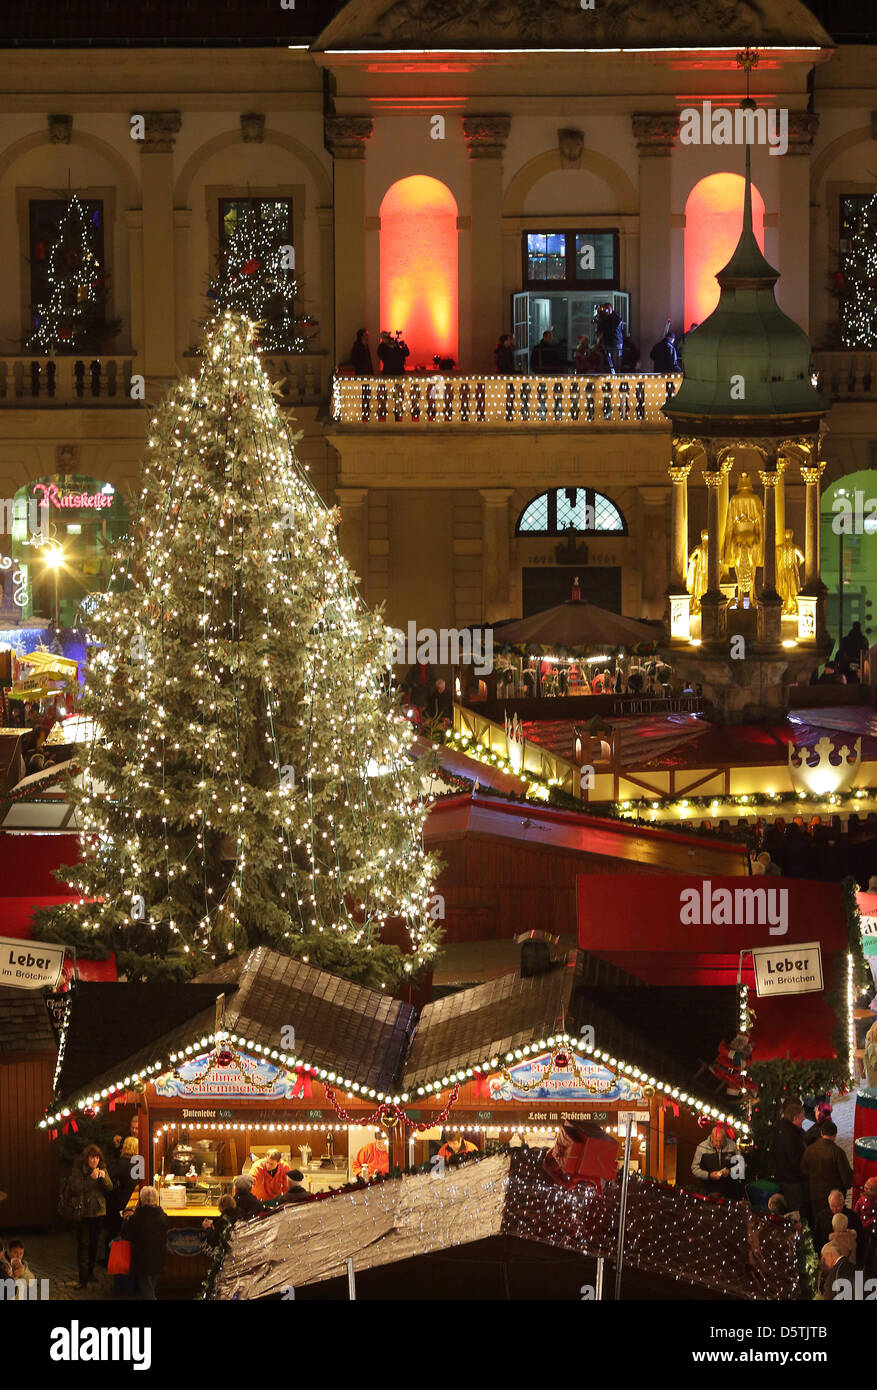 Le marché de Noël avec des feux lumineux, stands et un arbre est représenté à l'hôtel de ville de Magdeburg, Allemagne, 26 novembre 2012. Le marché dispose de 135 stands qui sera ouvert jusqu'au 20 décembre 2012. Photo : Jens Wolf Banque D'Images